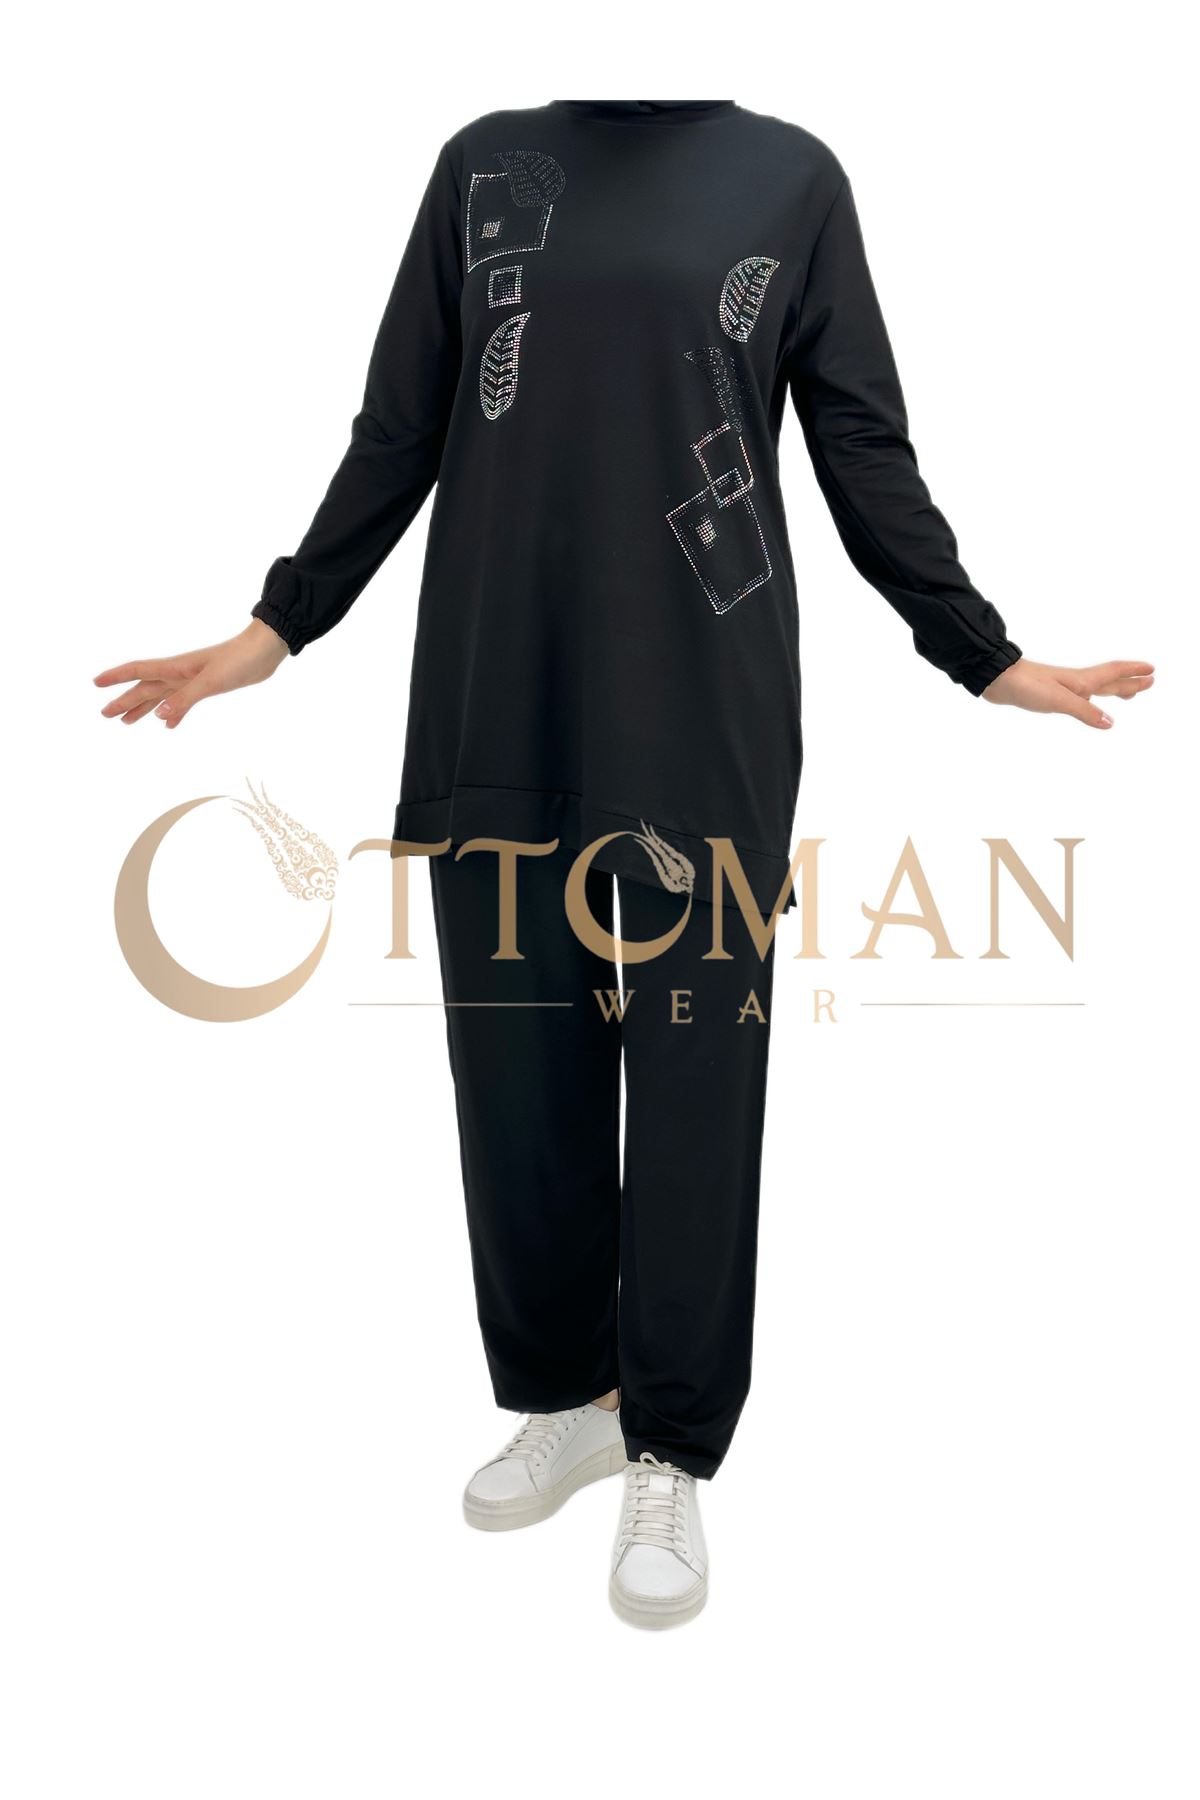 OTW005 Geometrik Desenli Pantolonlu Takım Siyah